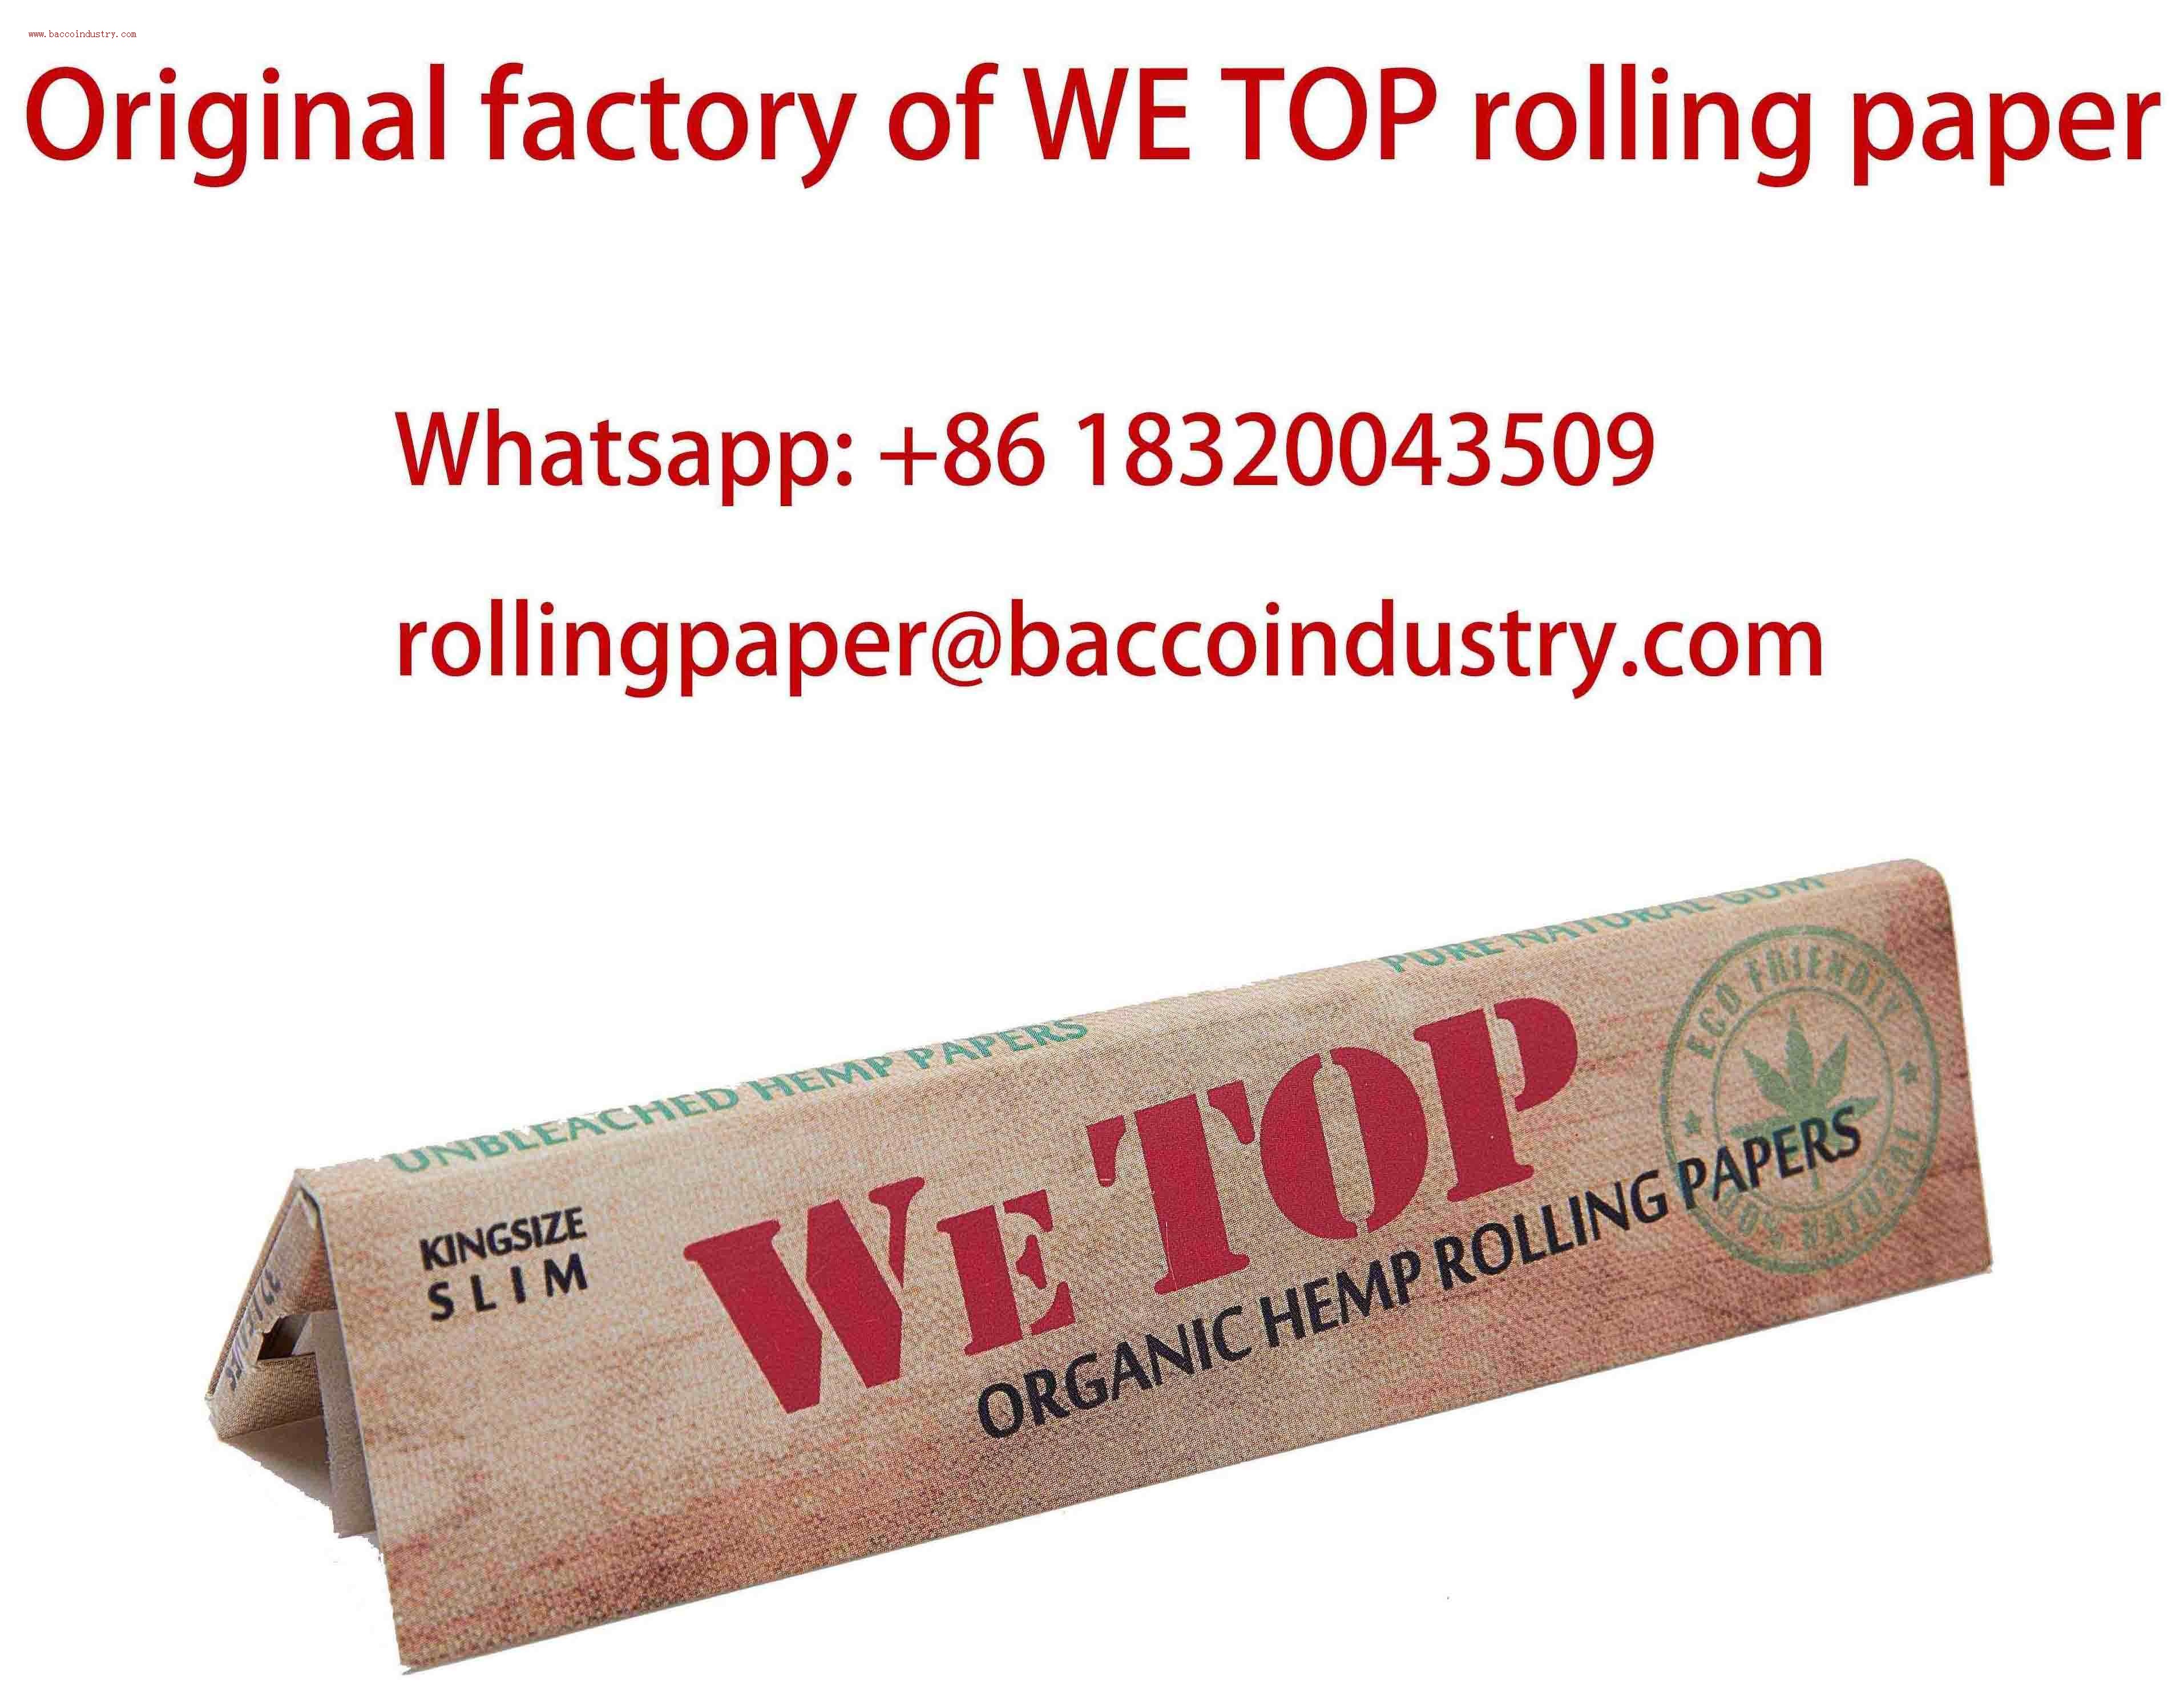 WE TOP Hemp rolling paper